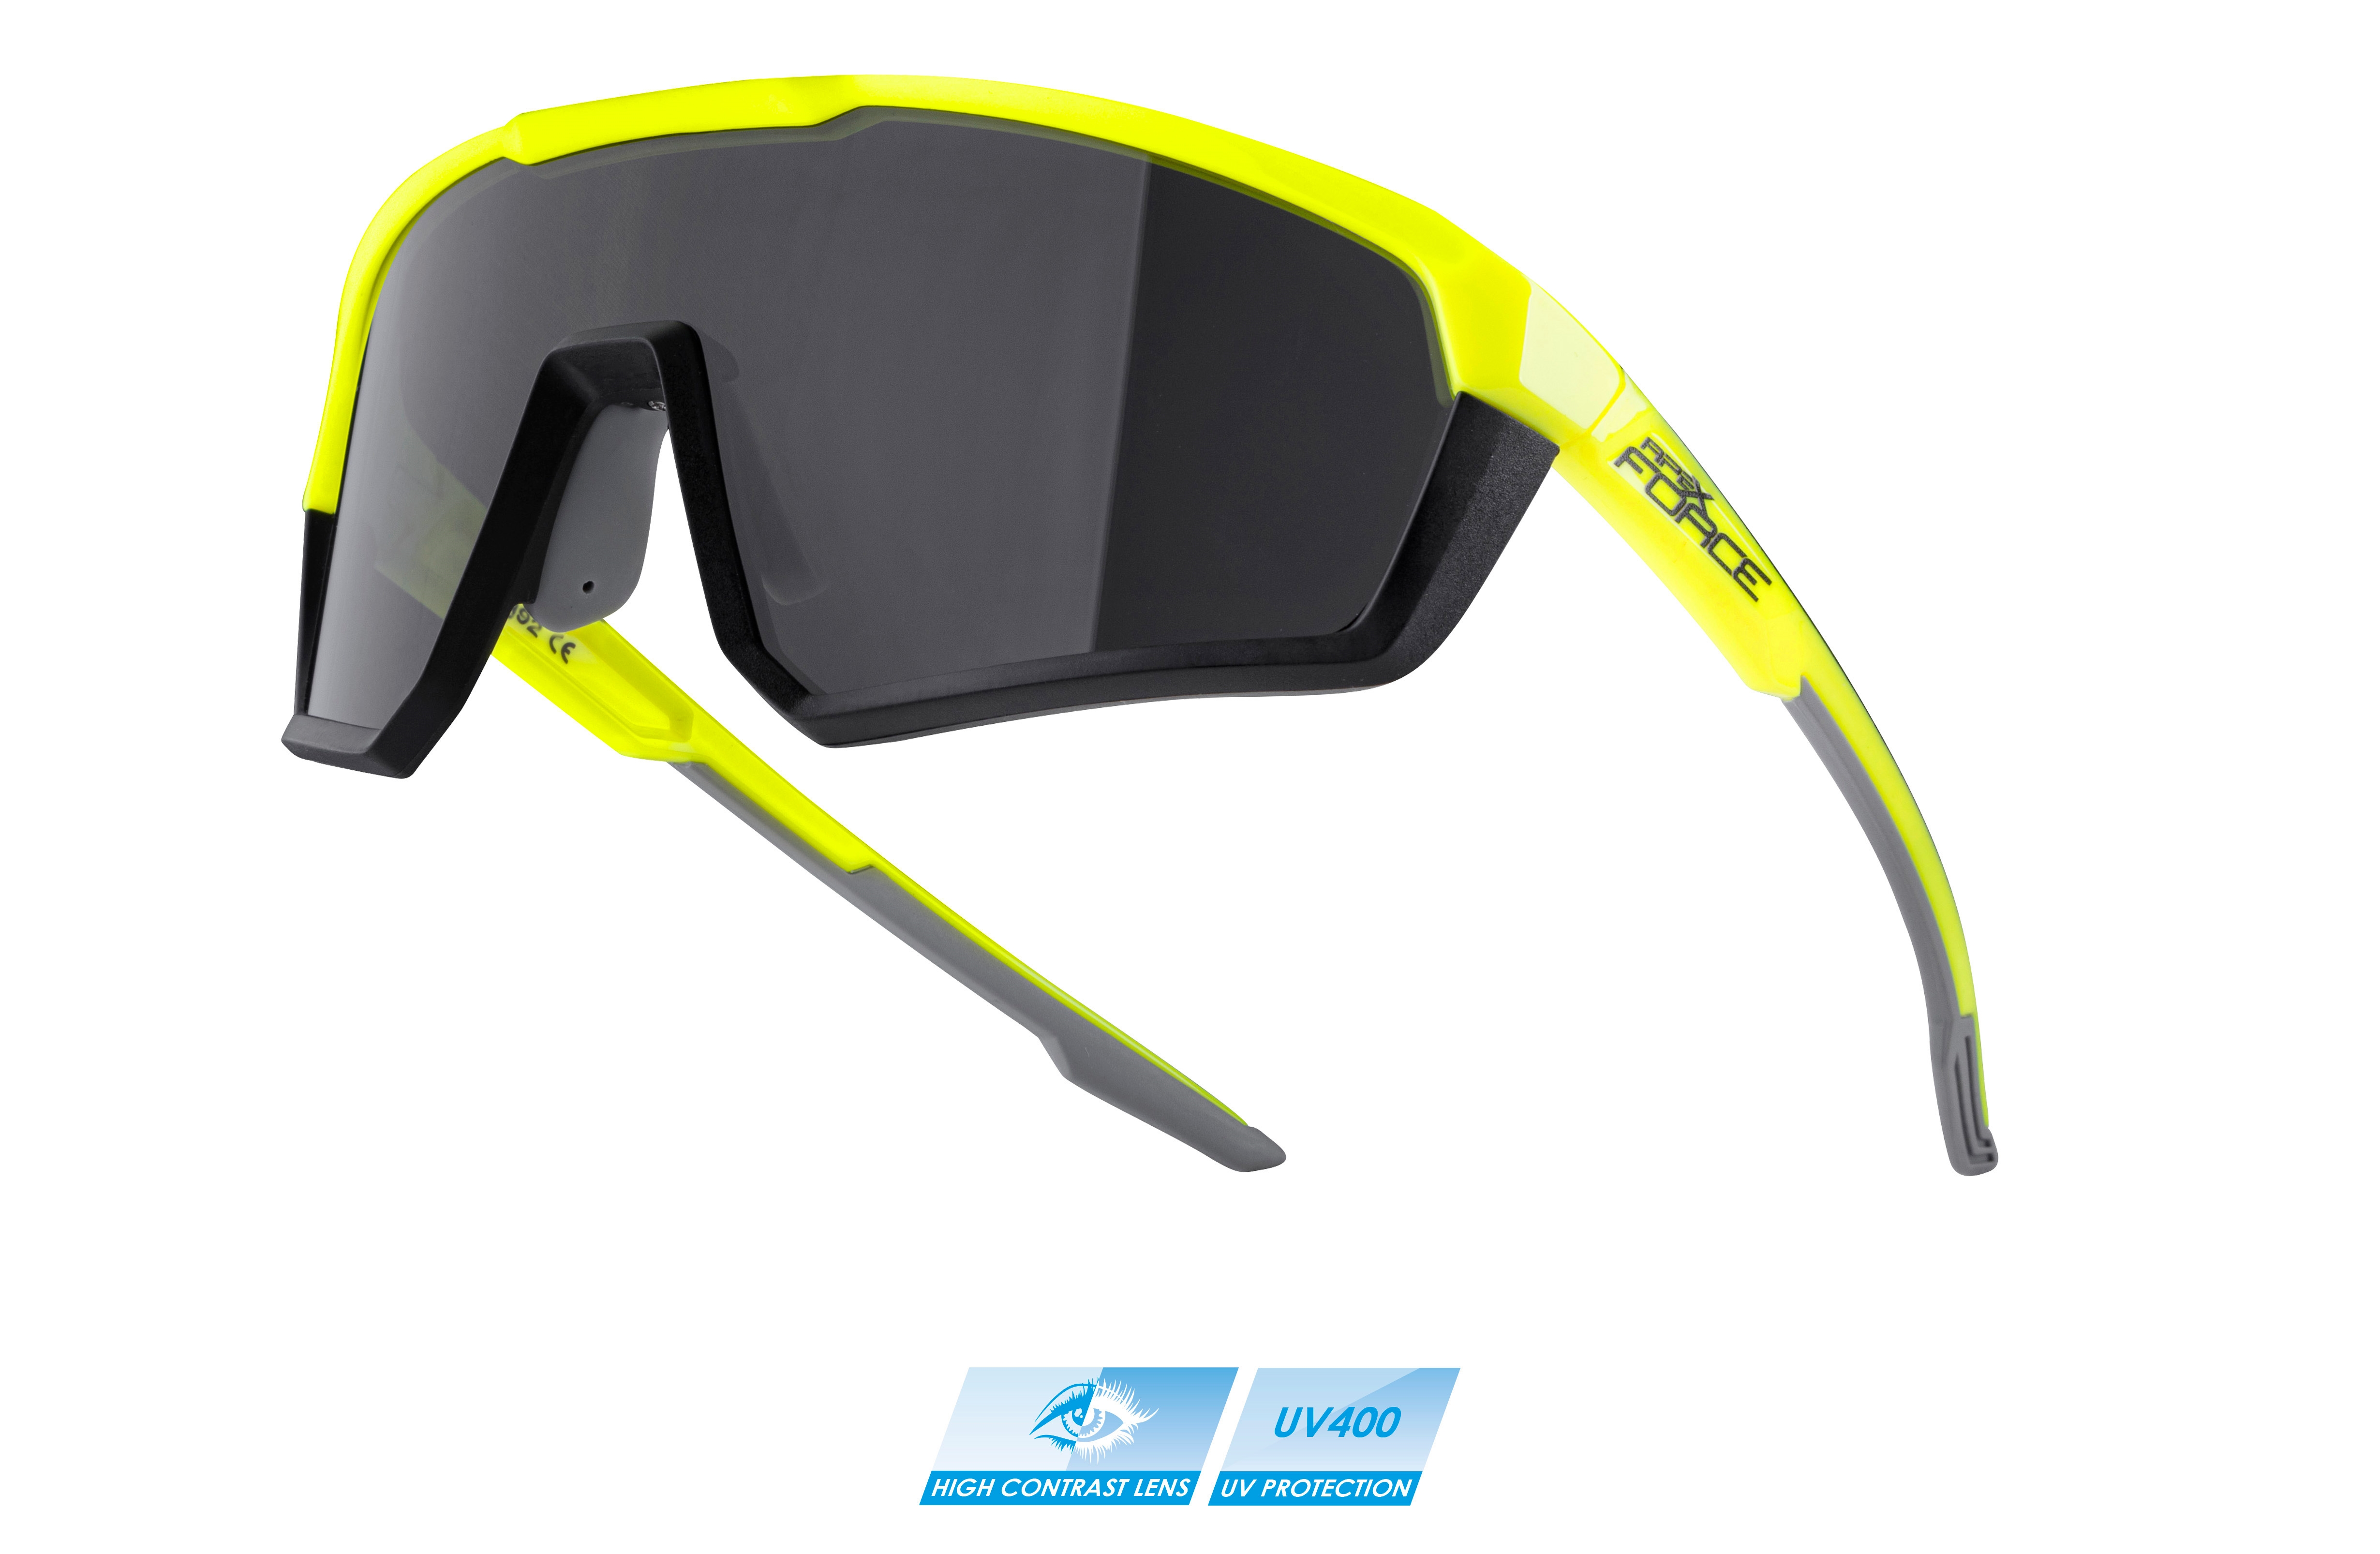 brýle FORCE APEX, fluo-černé,černé kontrastní sklo varianta: barva: fluo, skla: kontrastní, určení: cyklistické, Řada: Black line